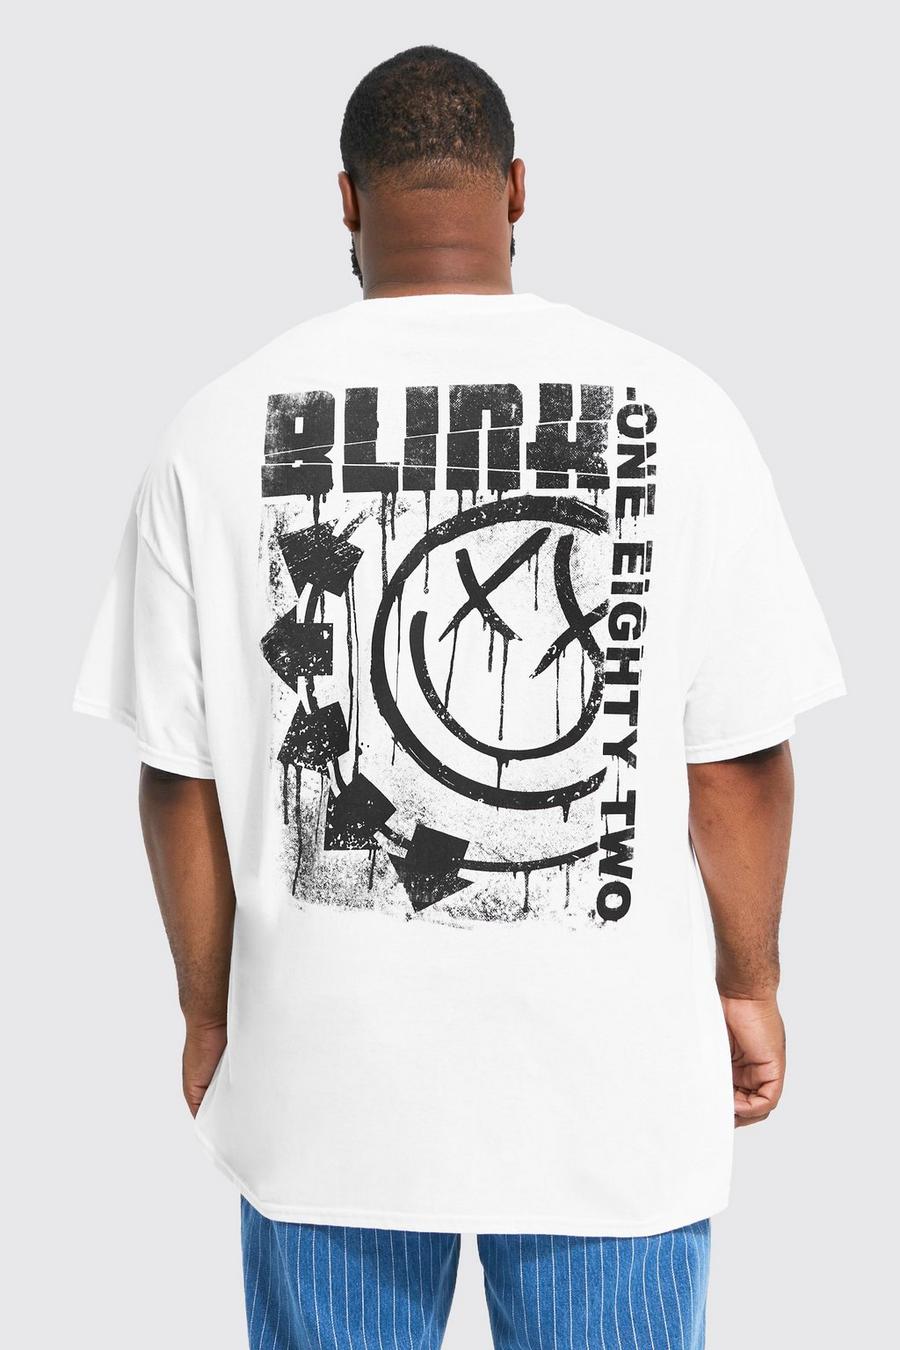 לבן טישרט עם הדפס ממותג של Blink 182, מידות גדולות